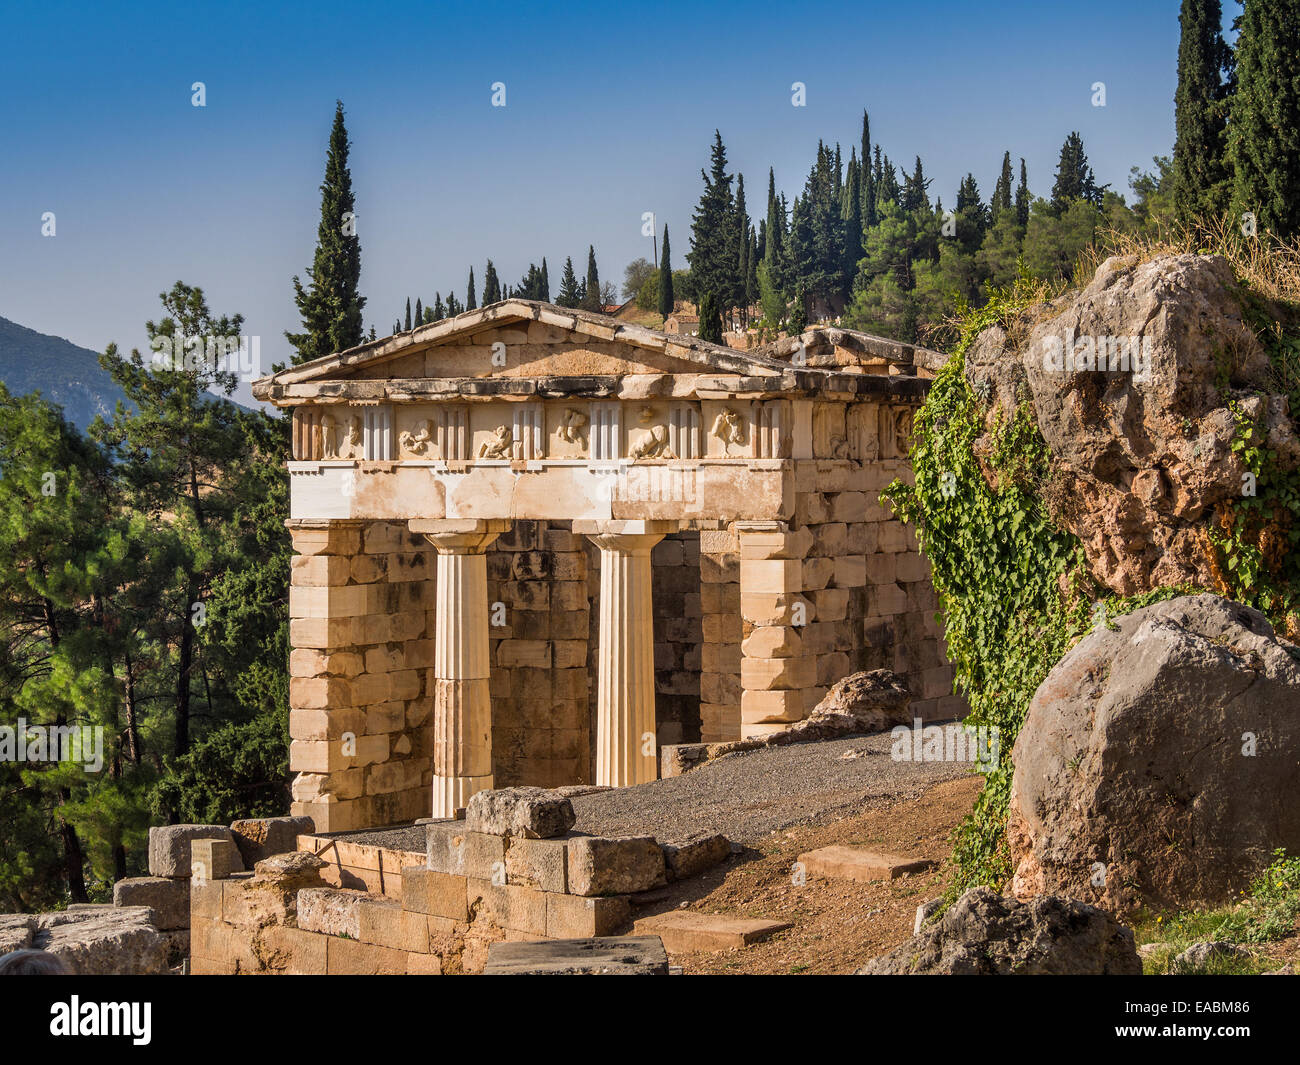 Il ricostruito tesoro di Delphi, Grecia, costruito per commemorare la vittoria nella battaglia di Maratona. Foto Stock